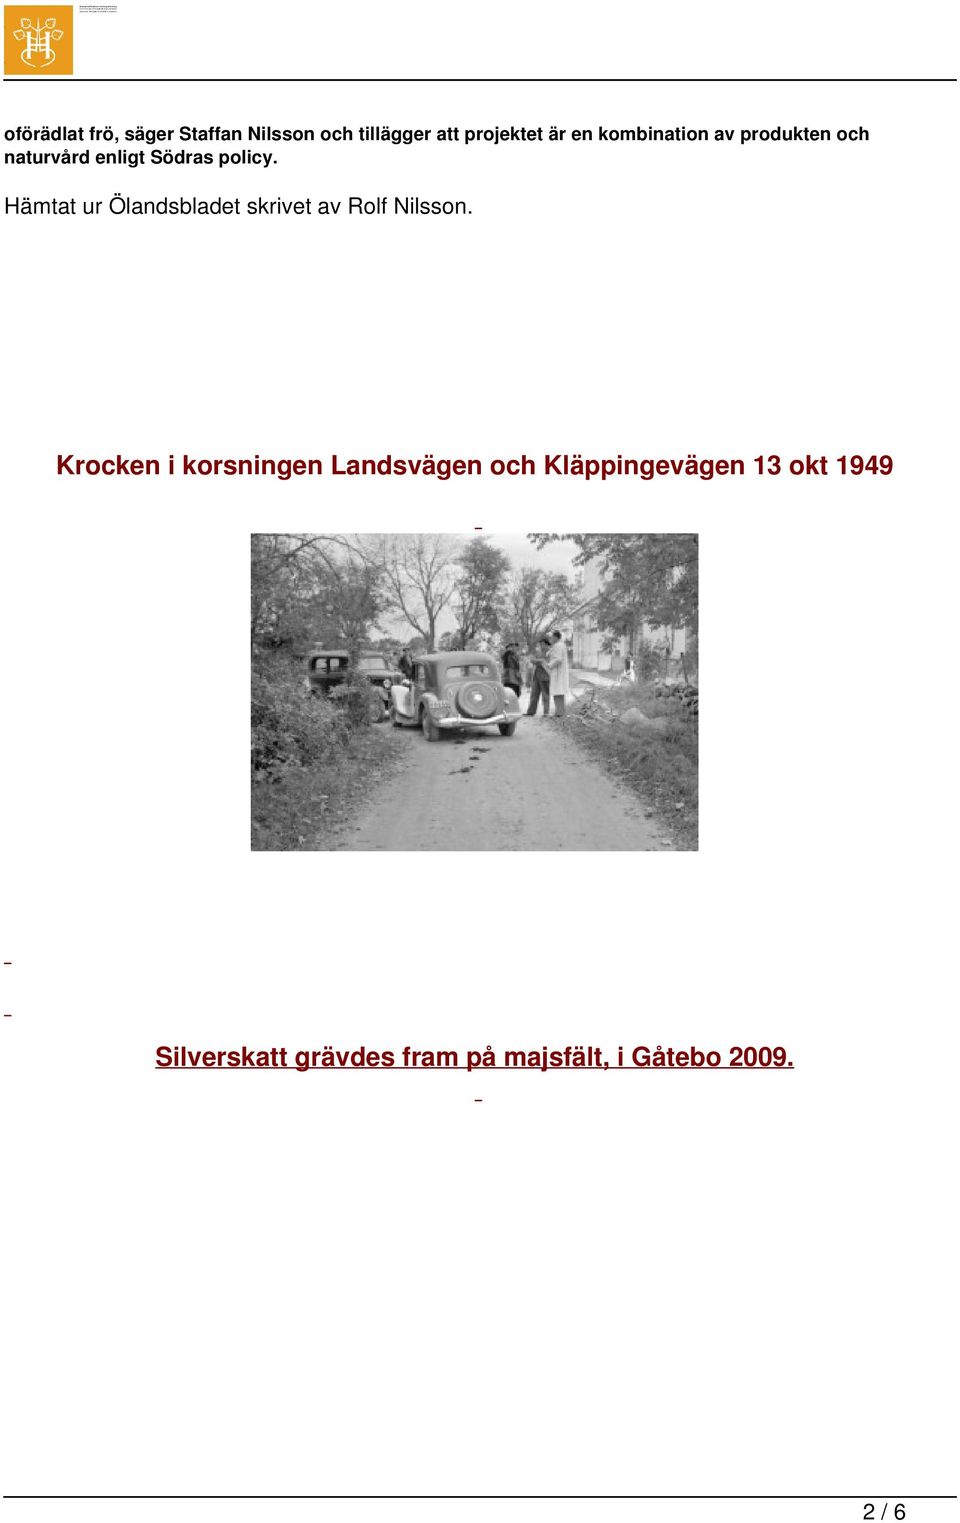 Hämtat ur Ölandsbladet skrivet av Rolf Nilsson.